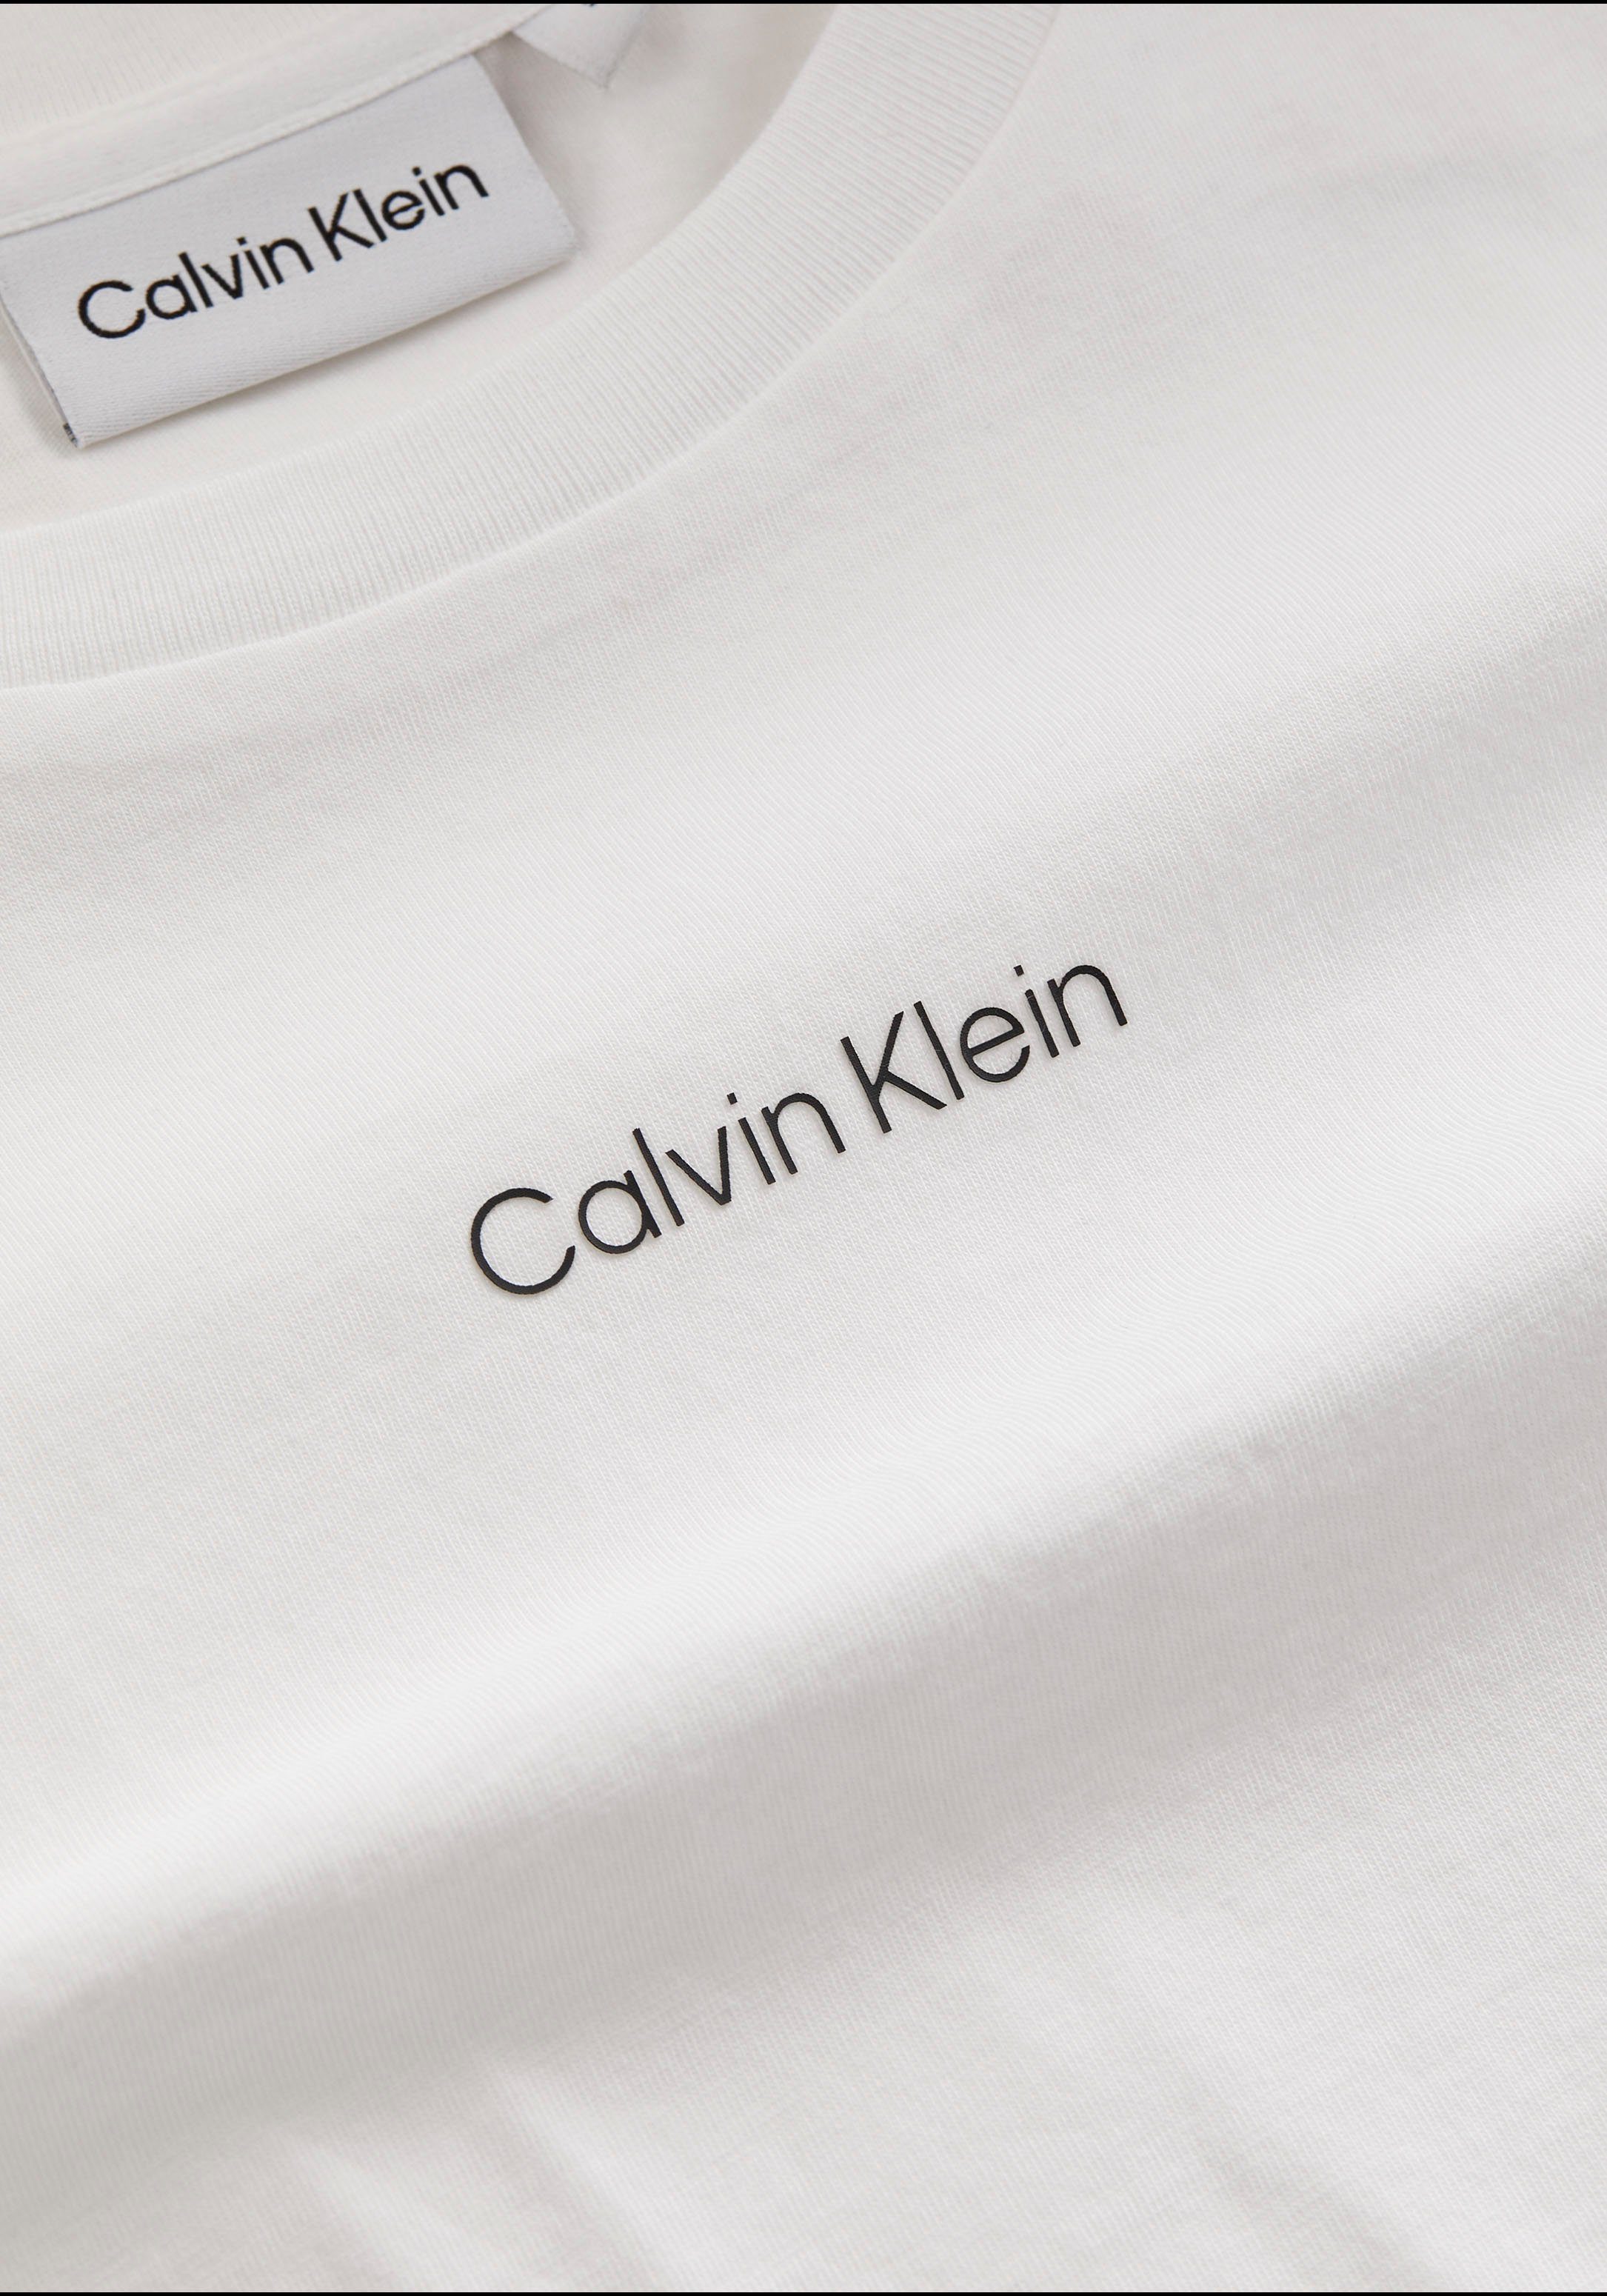 Bright-White MICRO LOGO T-Shirt Baumwolle Klein reiner Calvin aus T-SHIRT